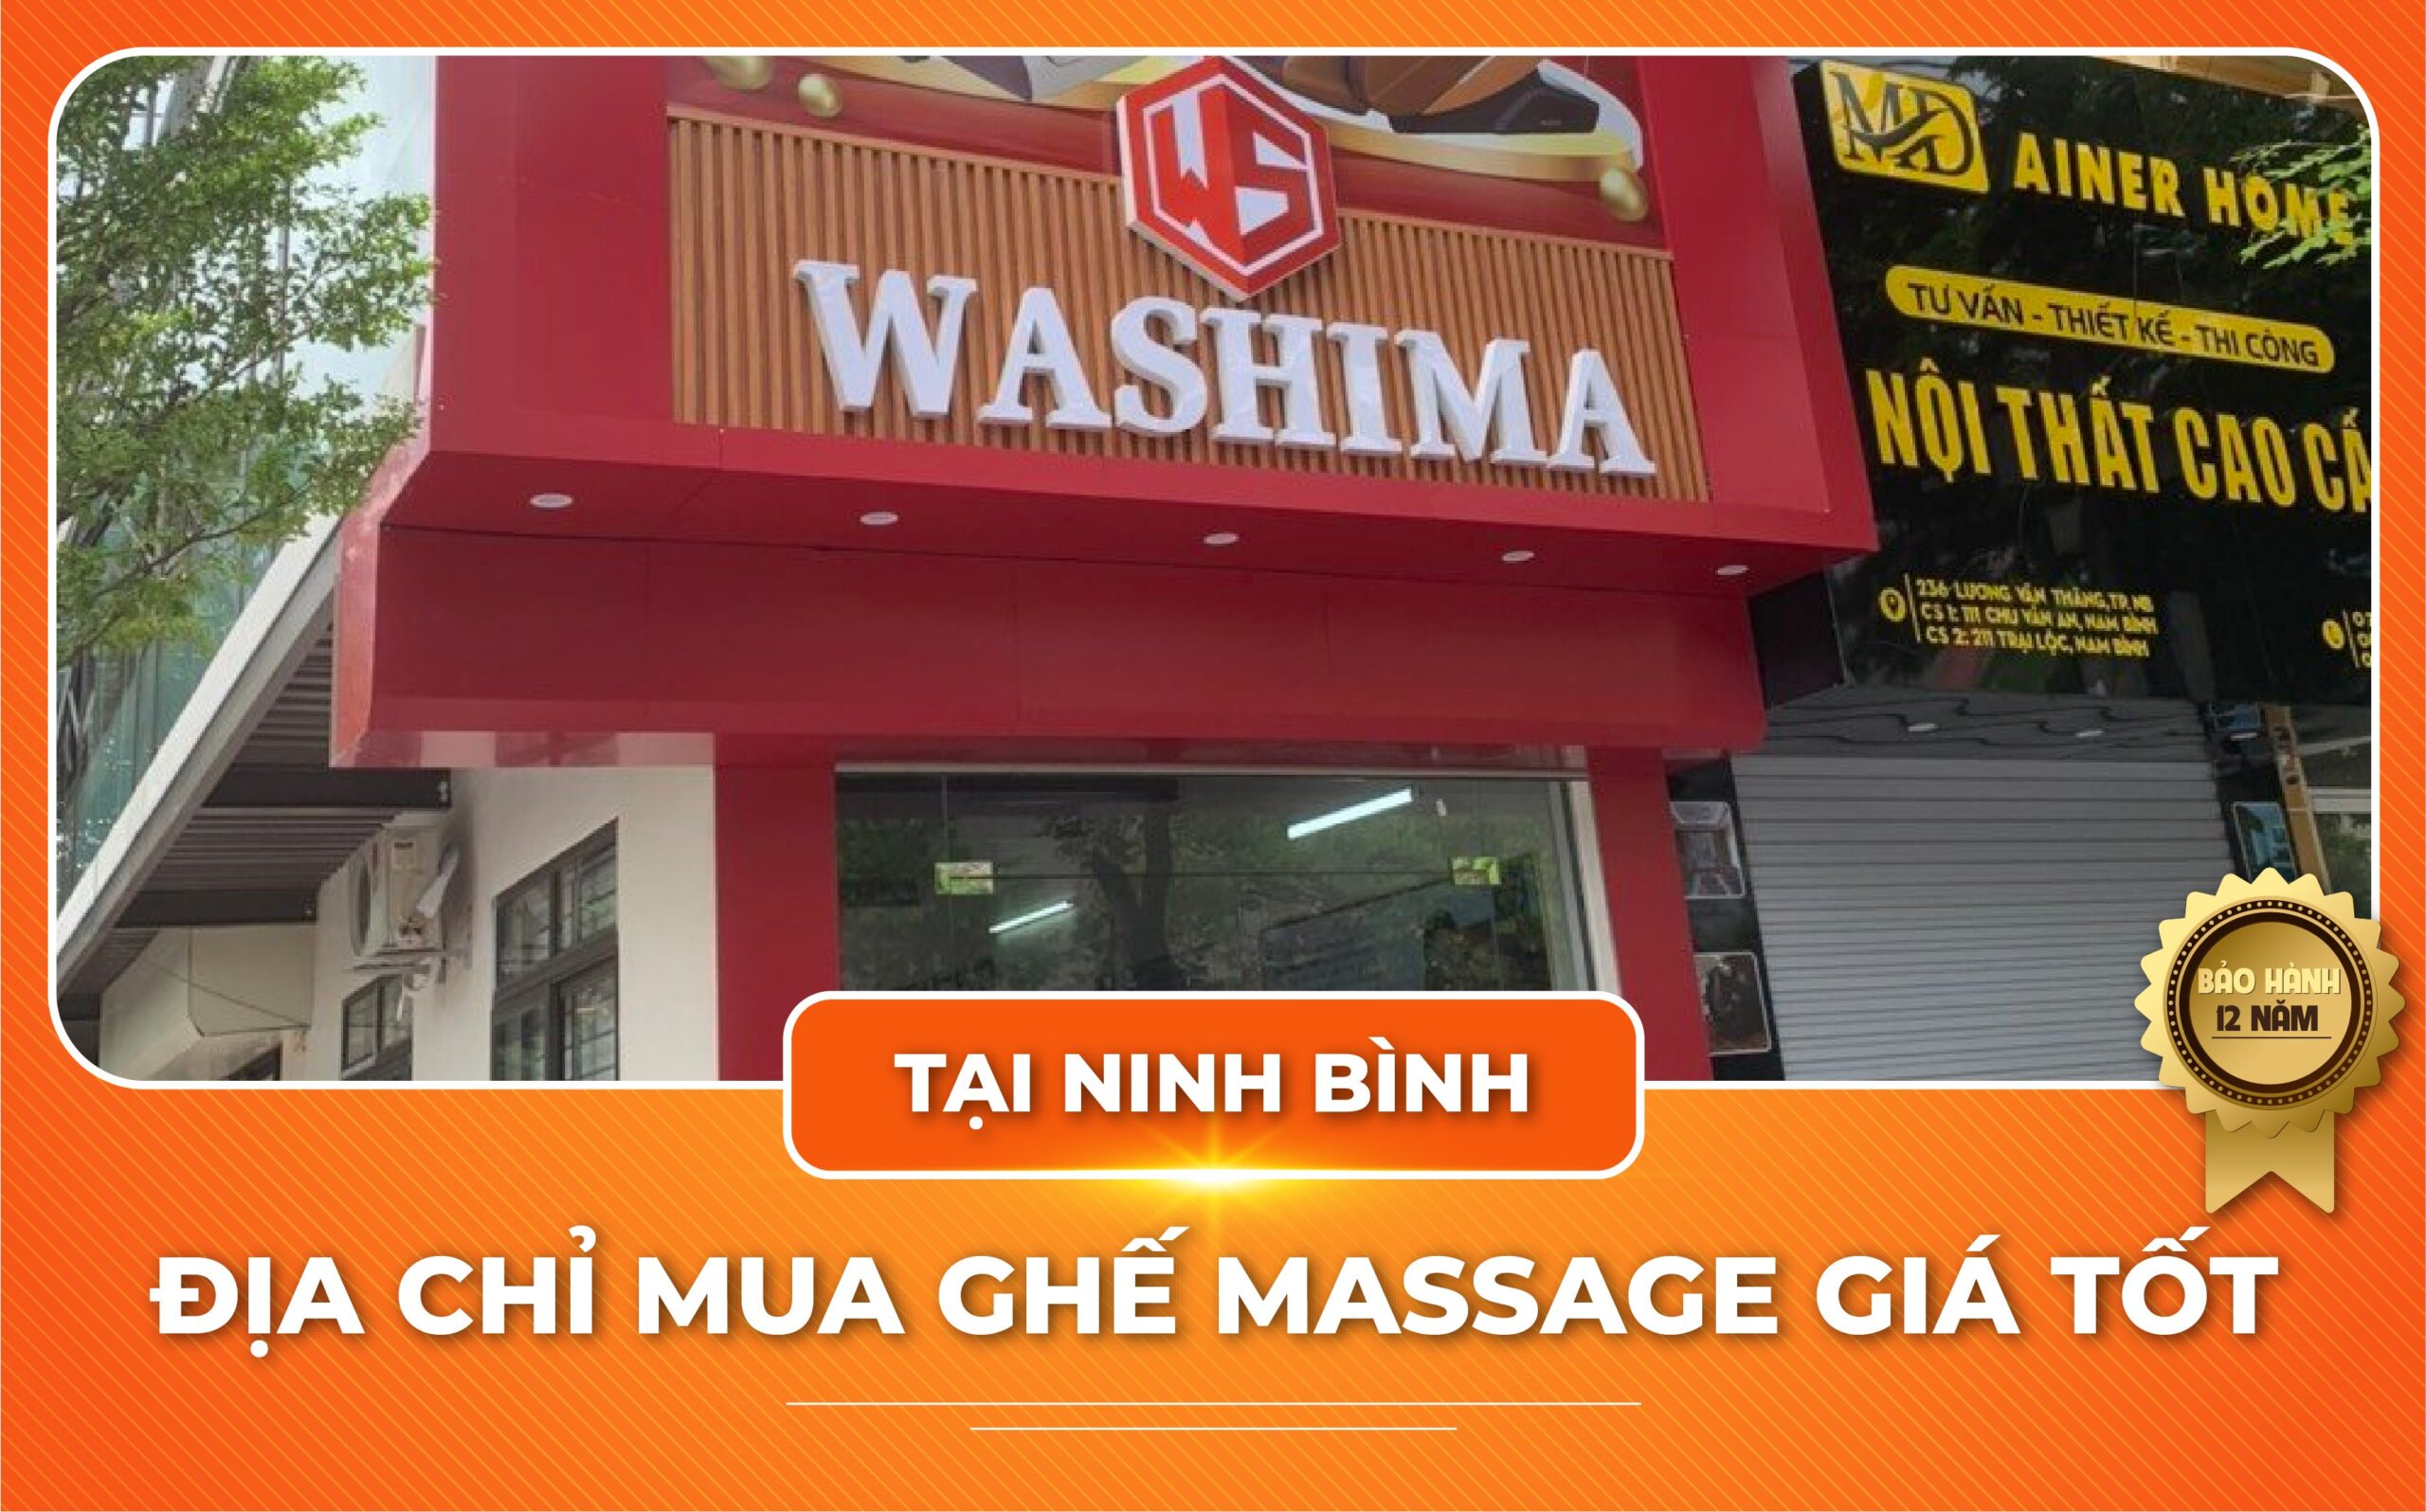 Đại lý ghế massage Washima tại Ninh Bình